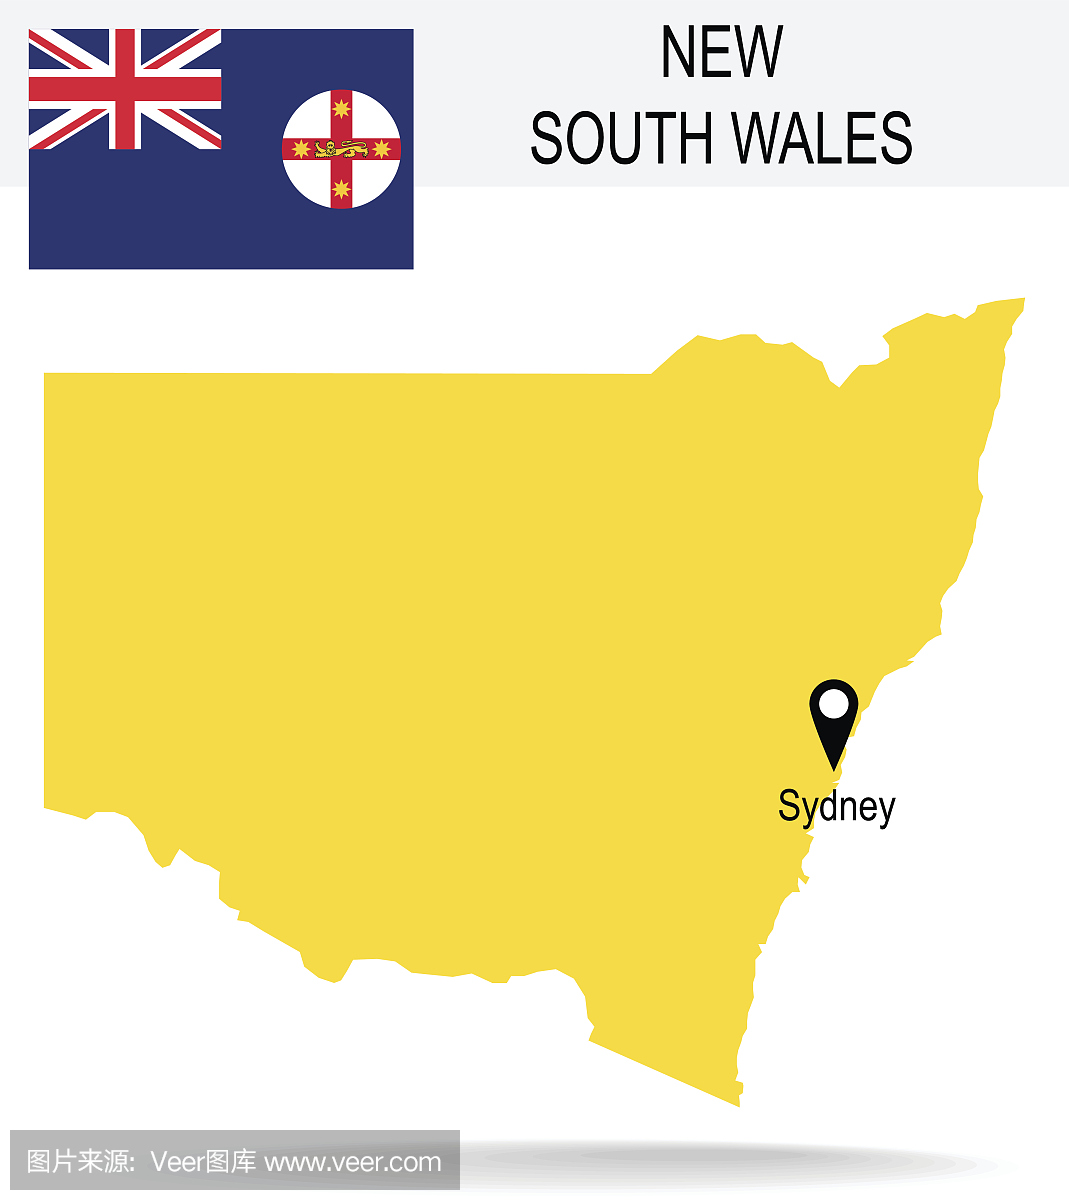 澳大利亚新南威尔士州地图和国旗